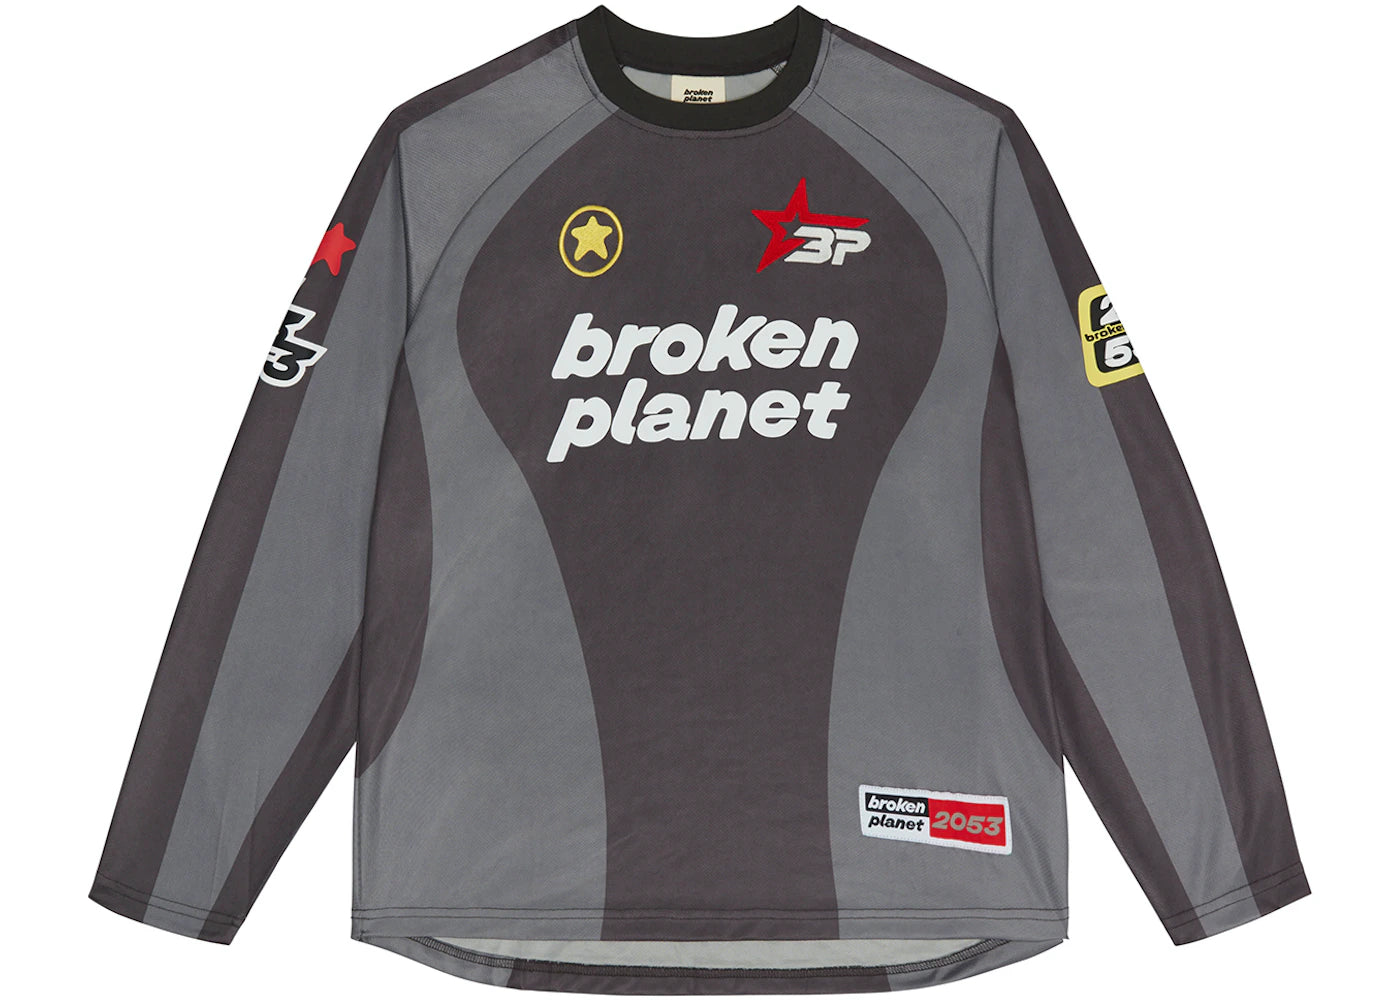 Broken Planet Market Football Shirt Long Sleeve